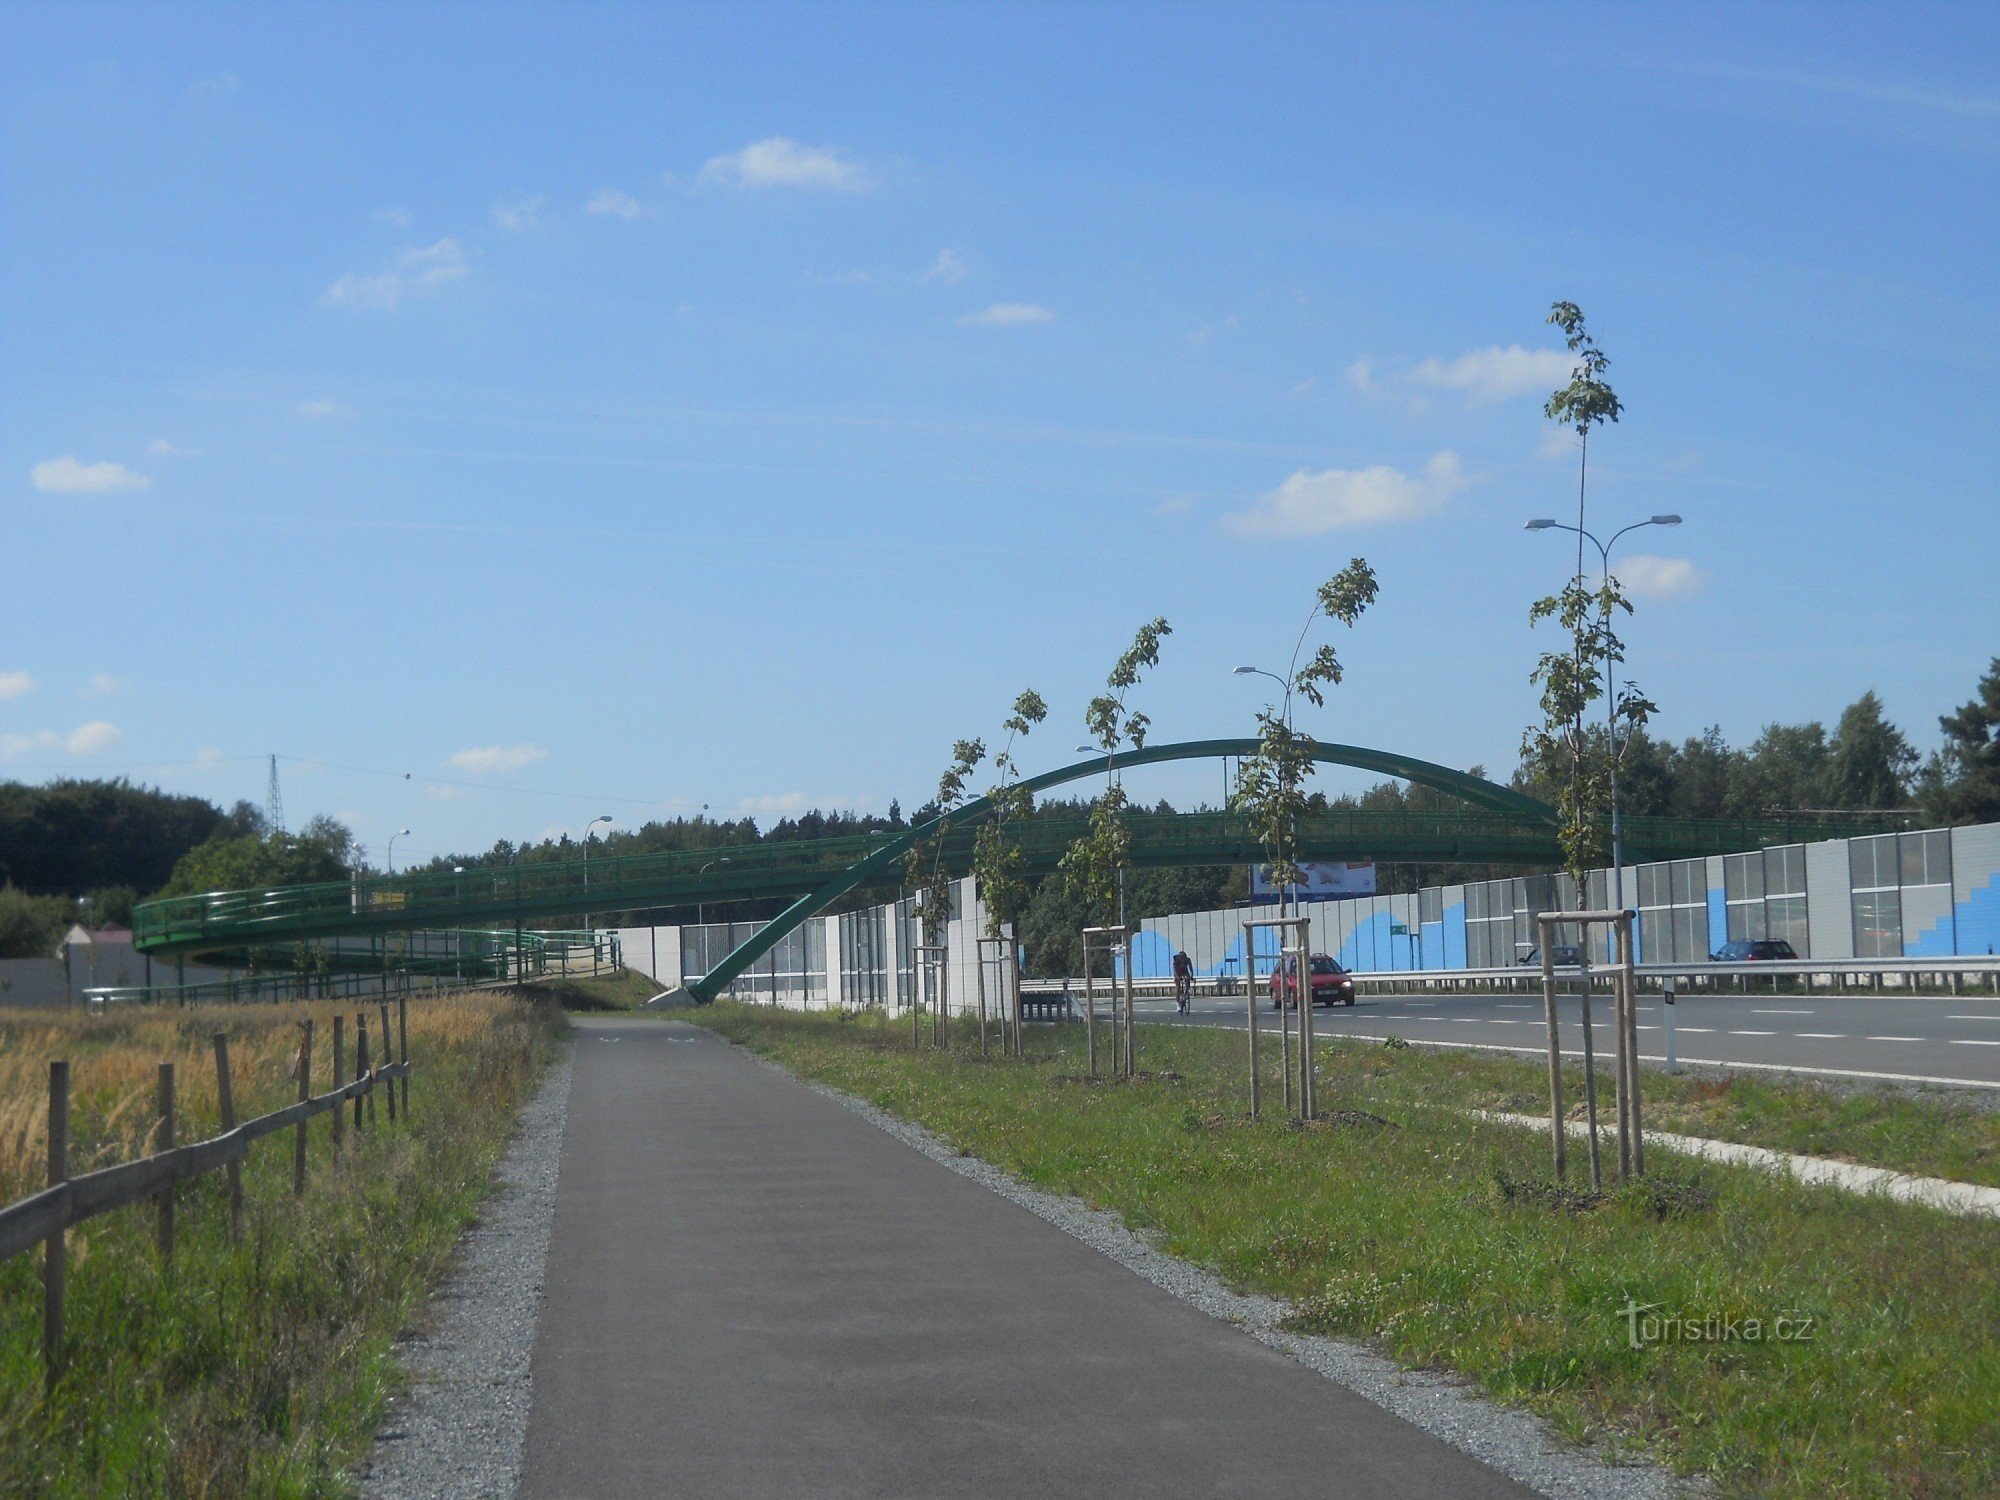 Новий міст для пішоходів і велосипедистів через Домажлицку